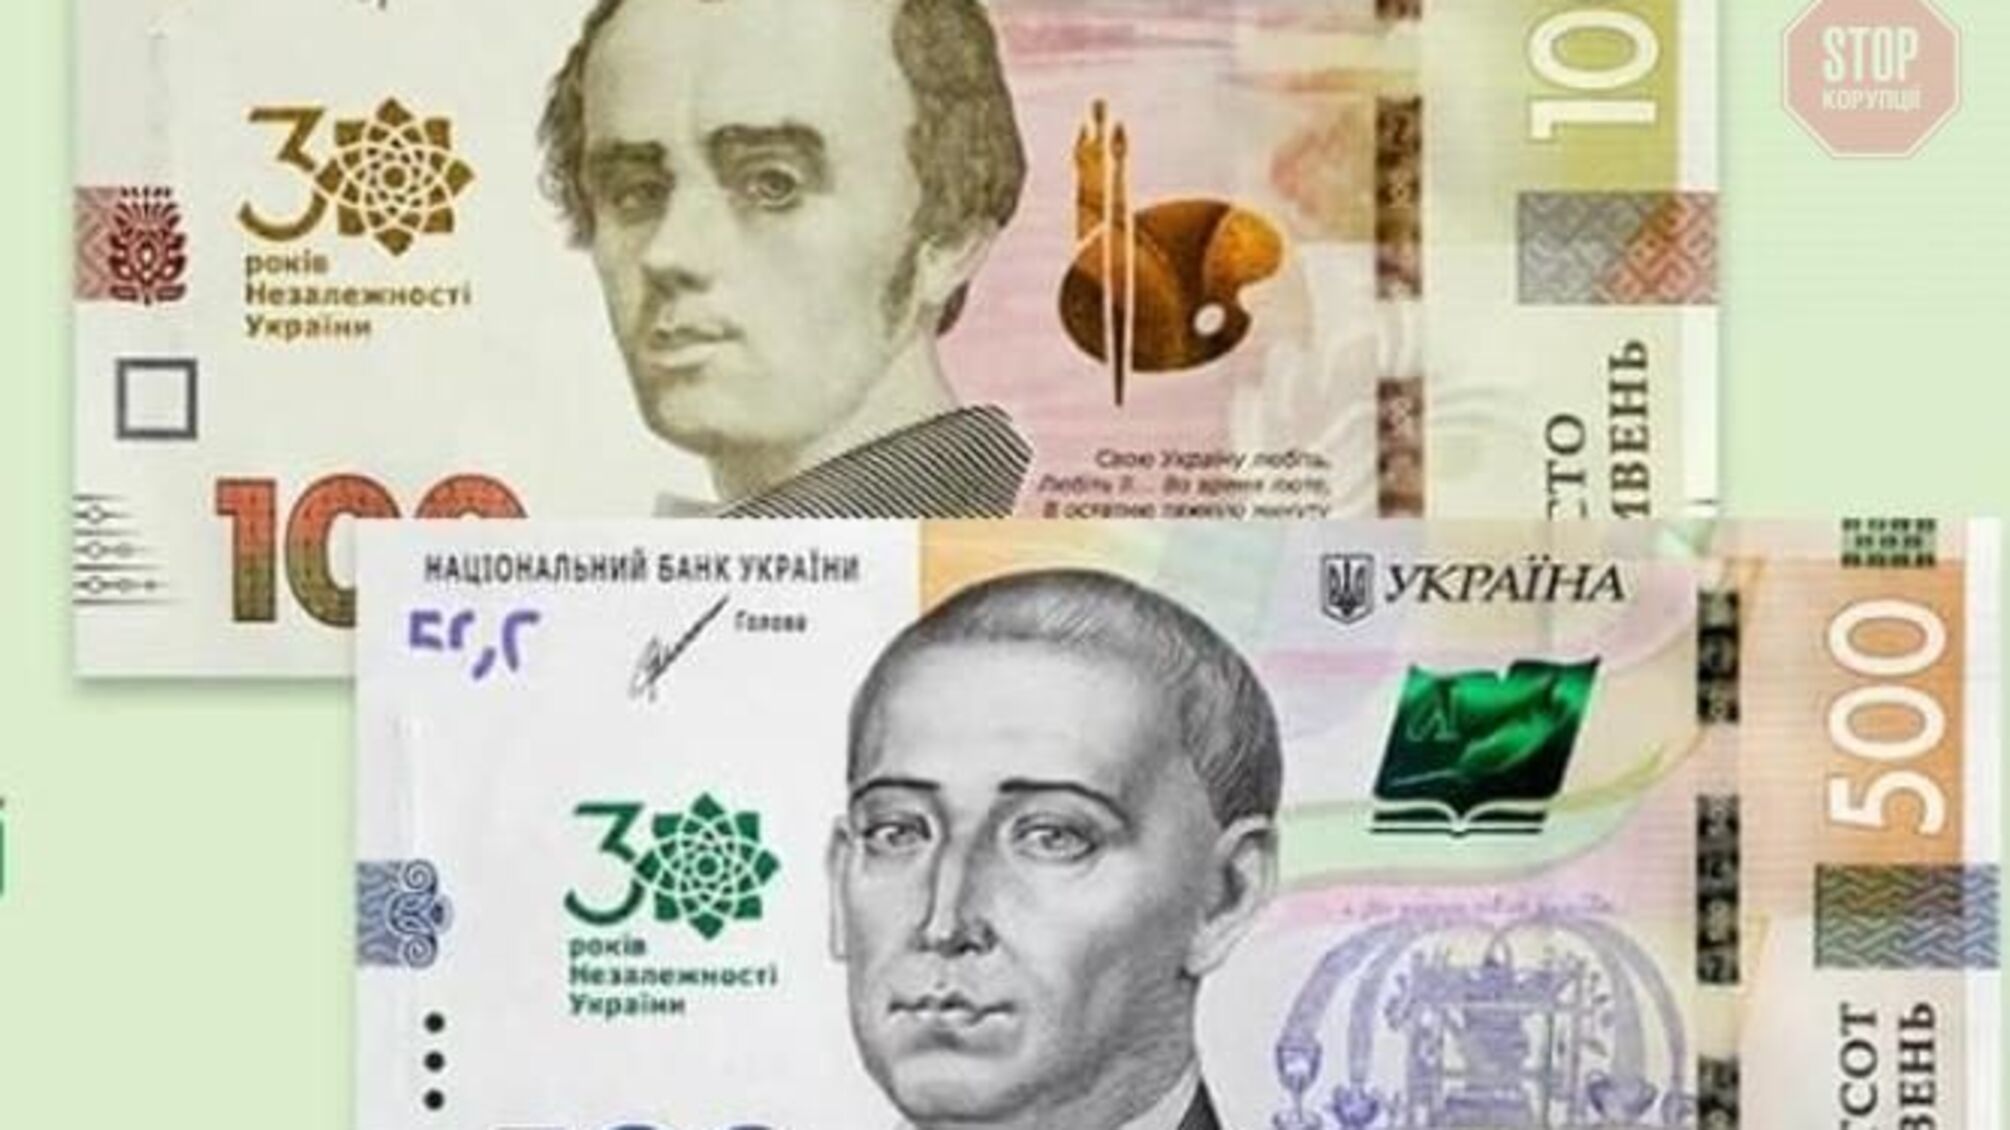 Ко Дню Независимости НБУ выпустит банкноты. Сколько стоят банкноты?